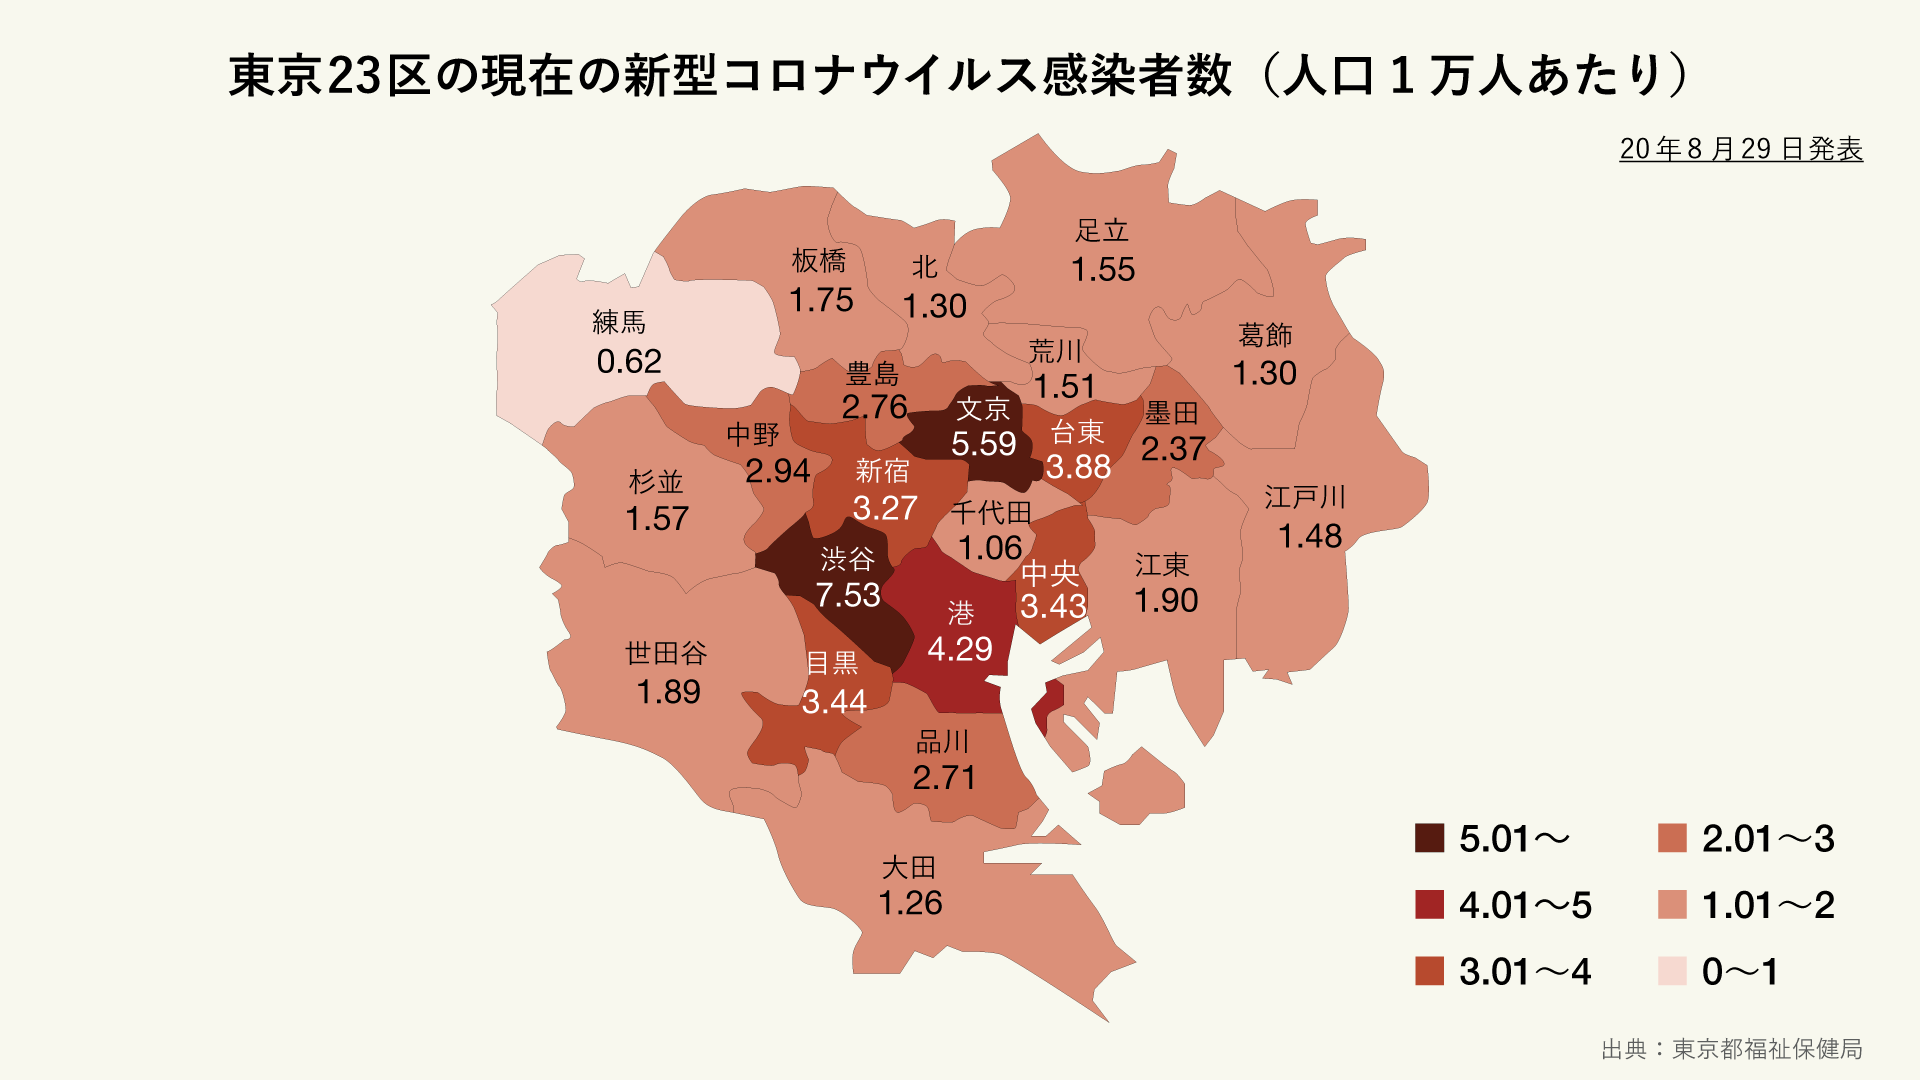 東京23区の現在の新型コロナウイルス感染者（人口1万人あたり）の分布マップ